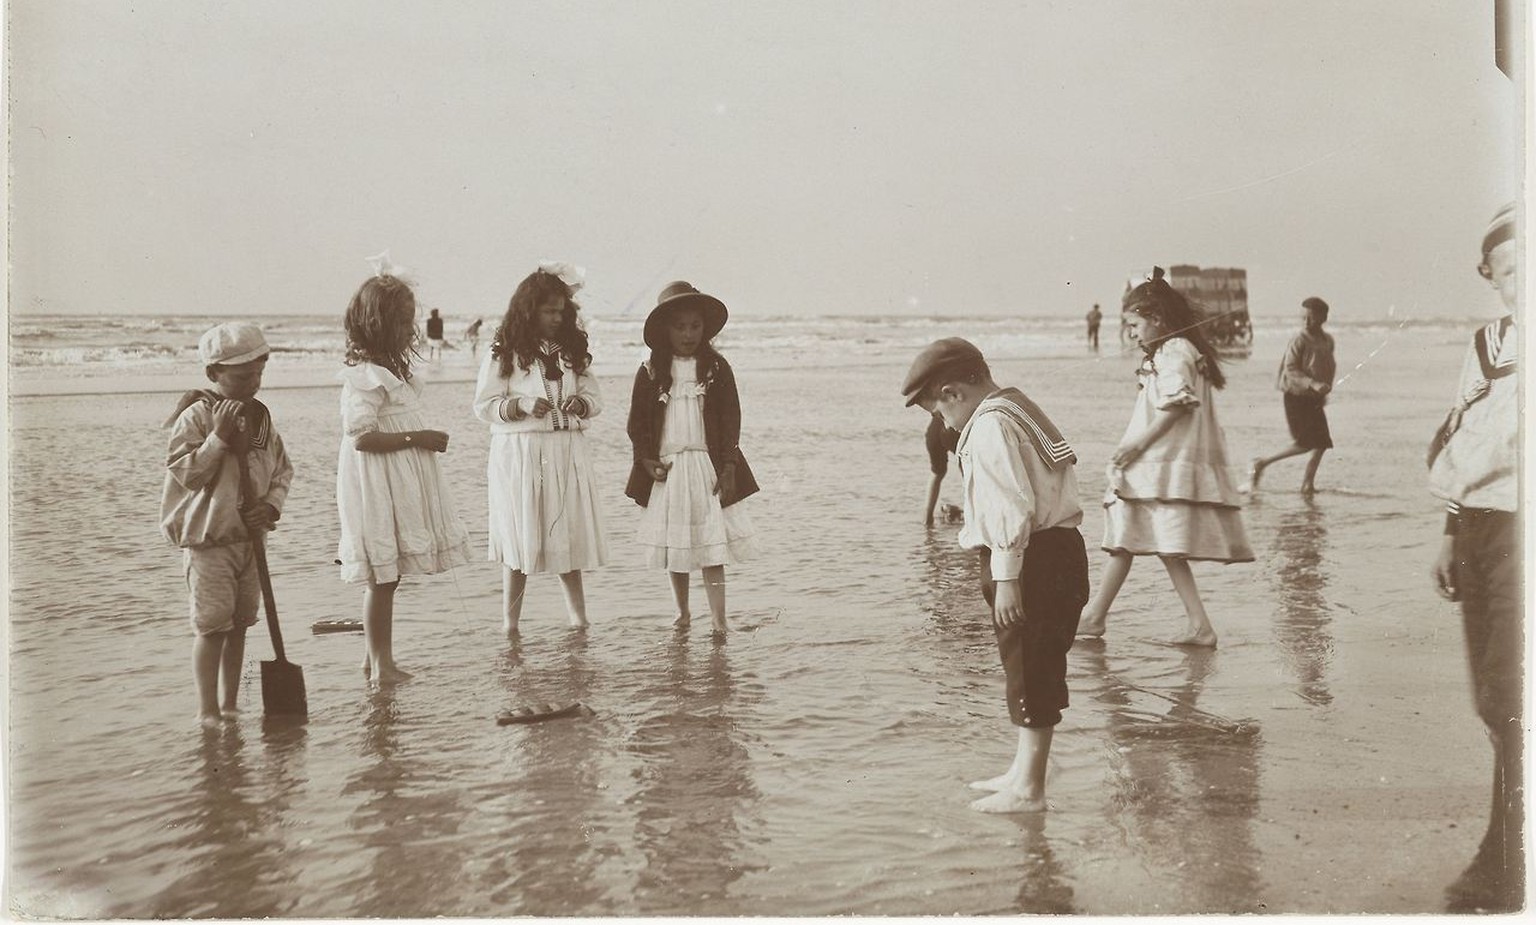 1898: Kinder spielen am Strand von Zandvoort, Niederlande.